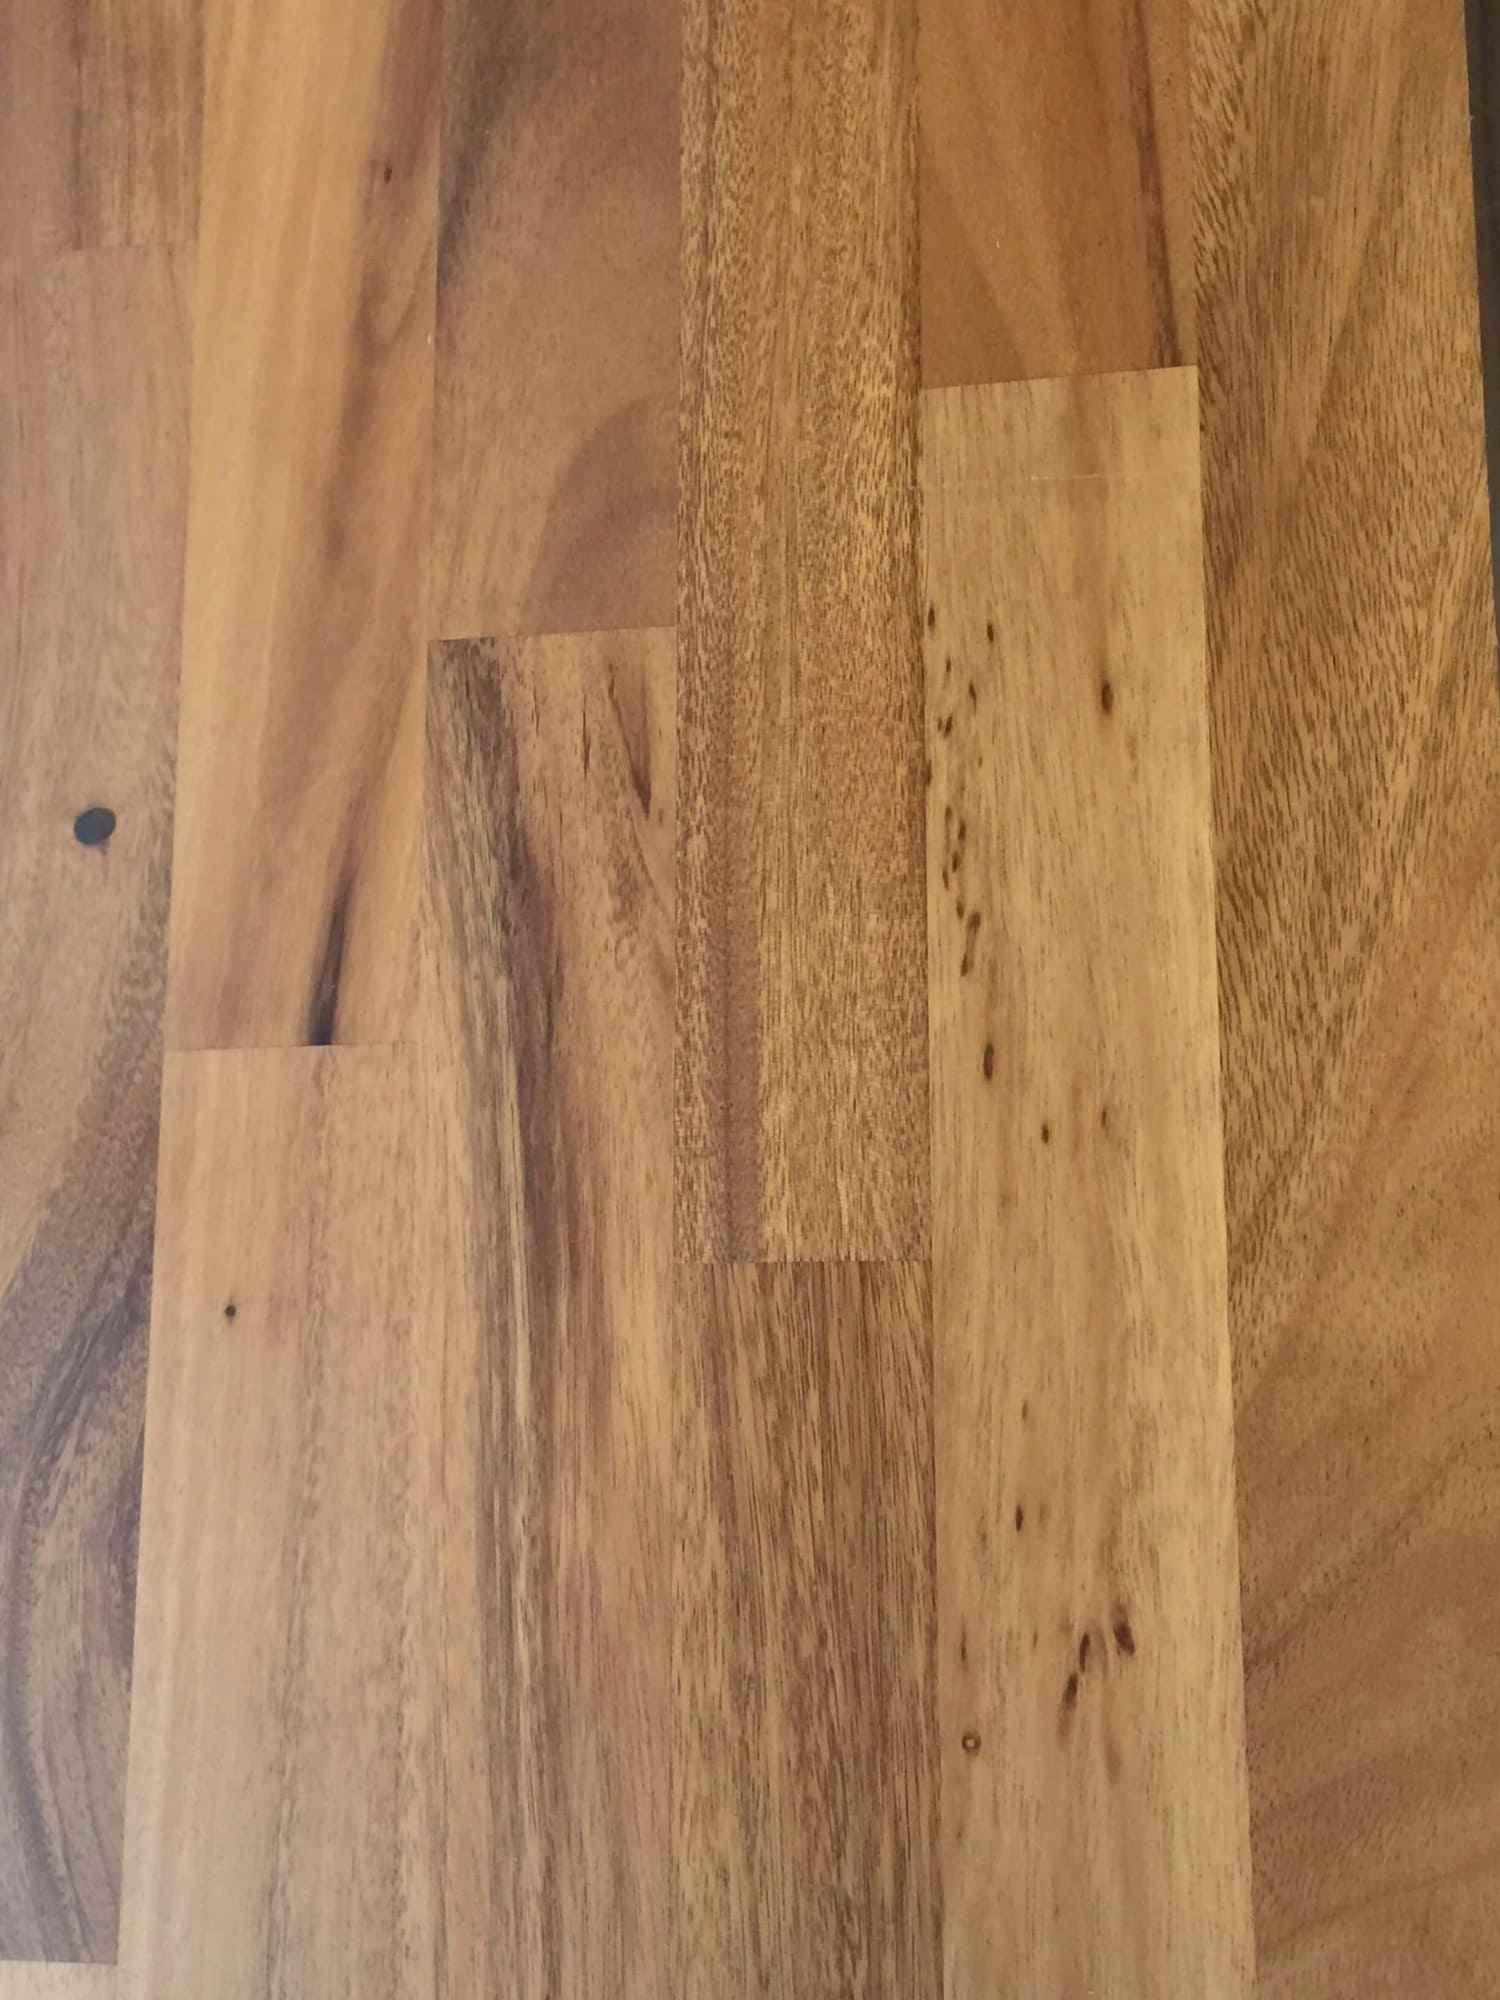 Indonesia Teak Engineered Hardwood Timber Flooring Pacific Walnut Floor Depot